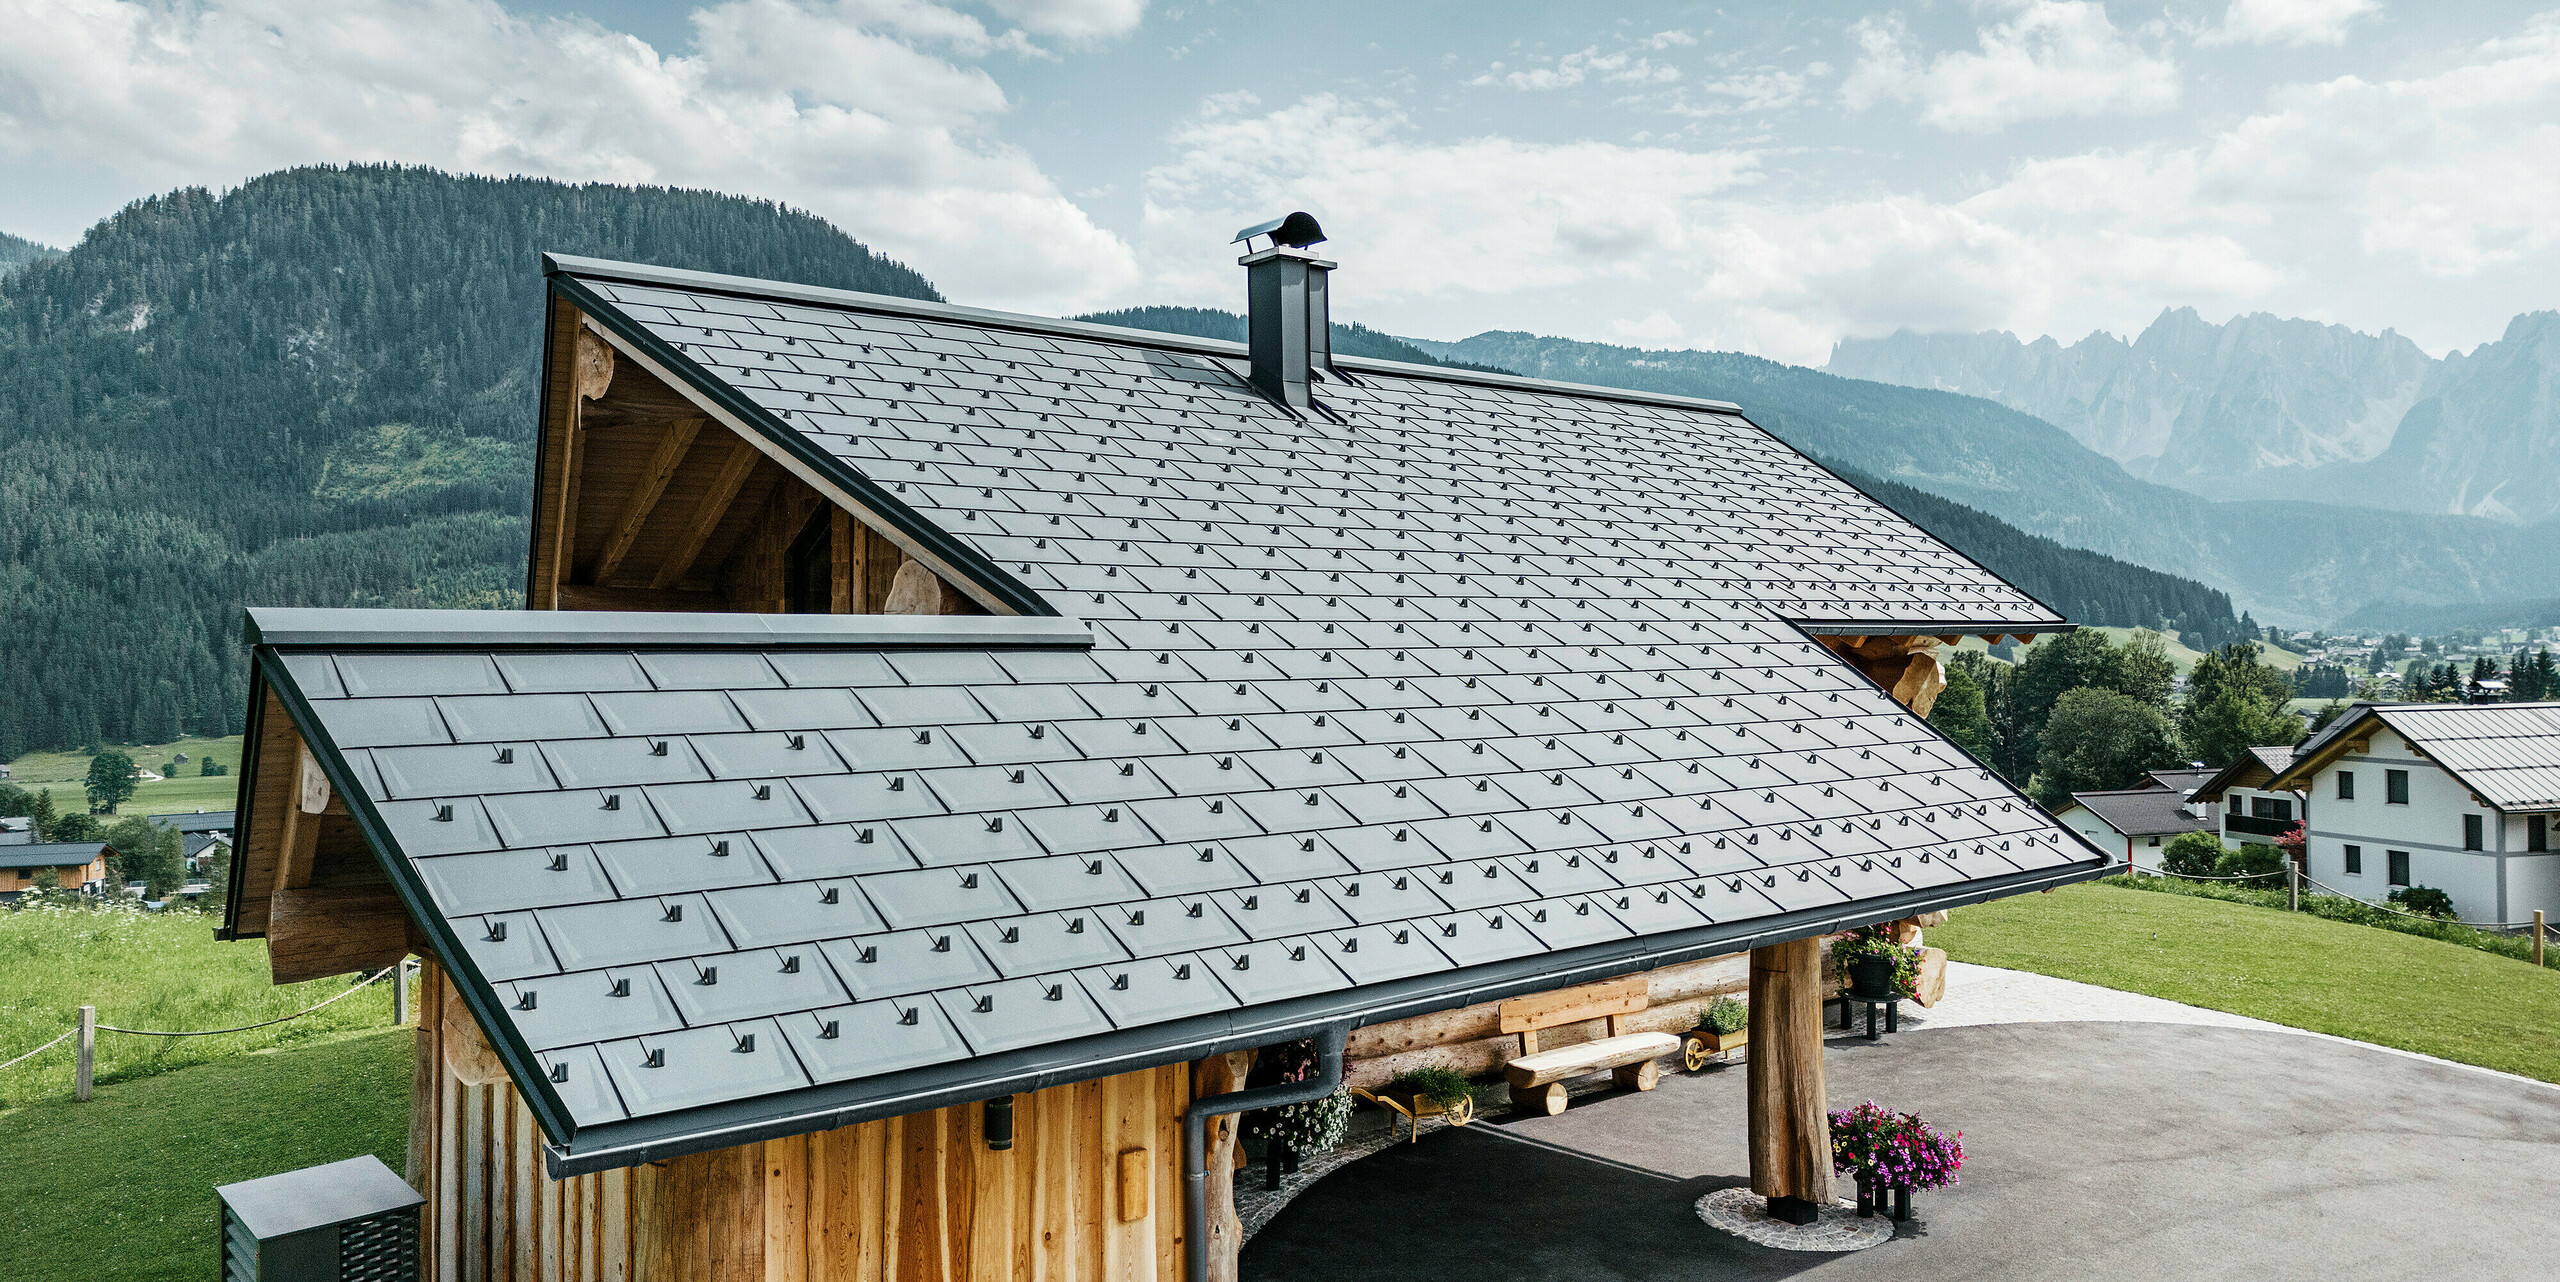 Moderna in hkrati tradicionalna arhitektura združeni v brunarici v kraju Gosau v Avstriji. Lesena hiša ima streho iz PREFA strešnih plošč R.16 v P.10 antracitni barvi. Pogled iz zraka prikazuje natančnost strešne konstrukcije, popolno integracijo v zasnovo brunarice in idilično vpetost v alpsko pokrajino z dih jemajočo gorsko panoramo v ozadju. Strešne plošče dajejo hiši sodoben pridih in so v skladu z okolju prijazno in trajnostno gradnjo.